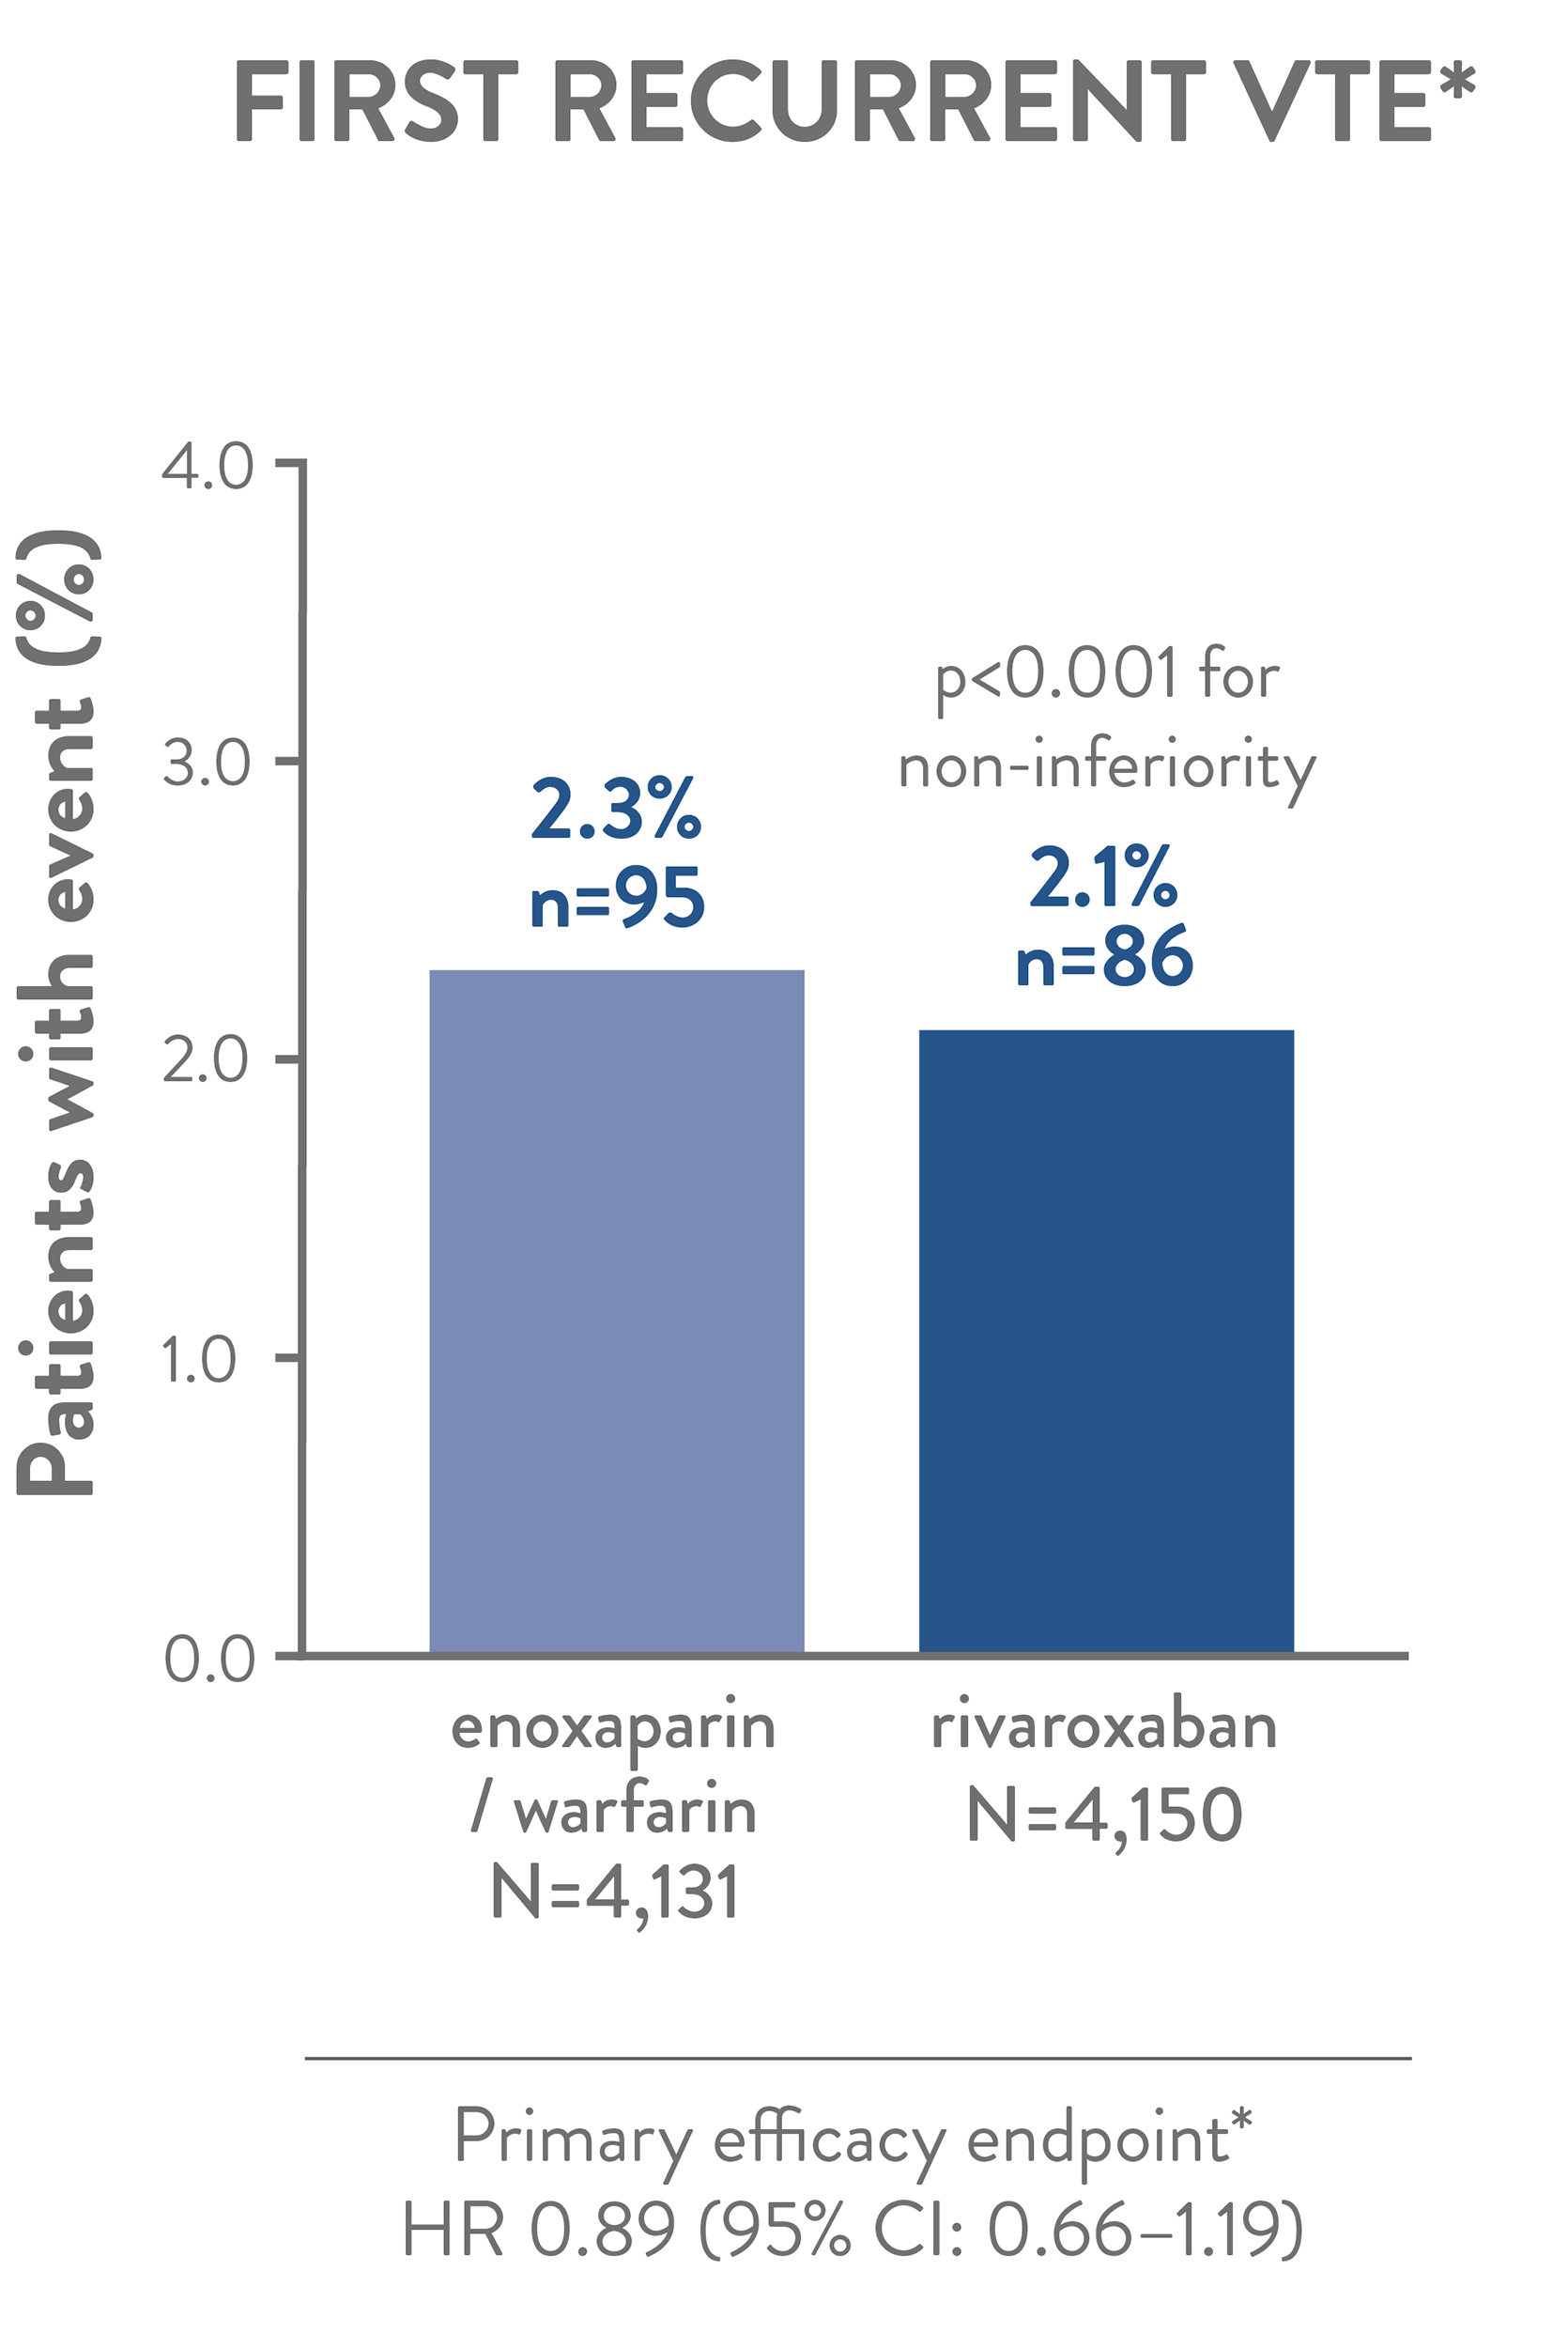 Efficacy of rivaroxaban vs. enoxaparin / warfarin: EINSTEIN pooled Analysis